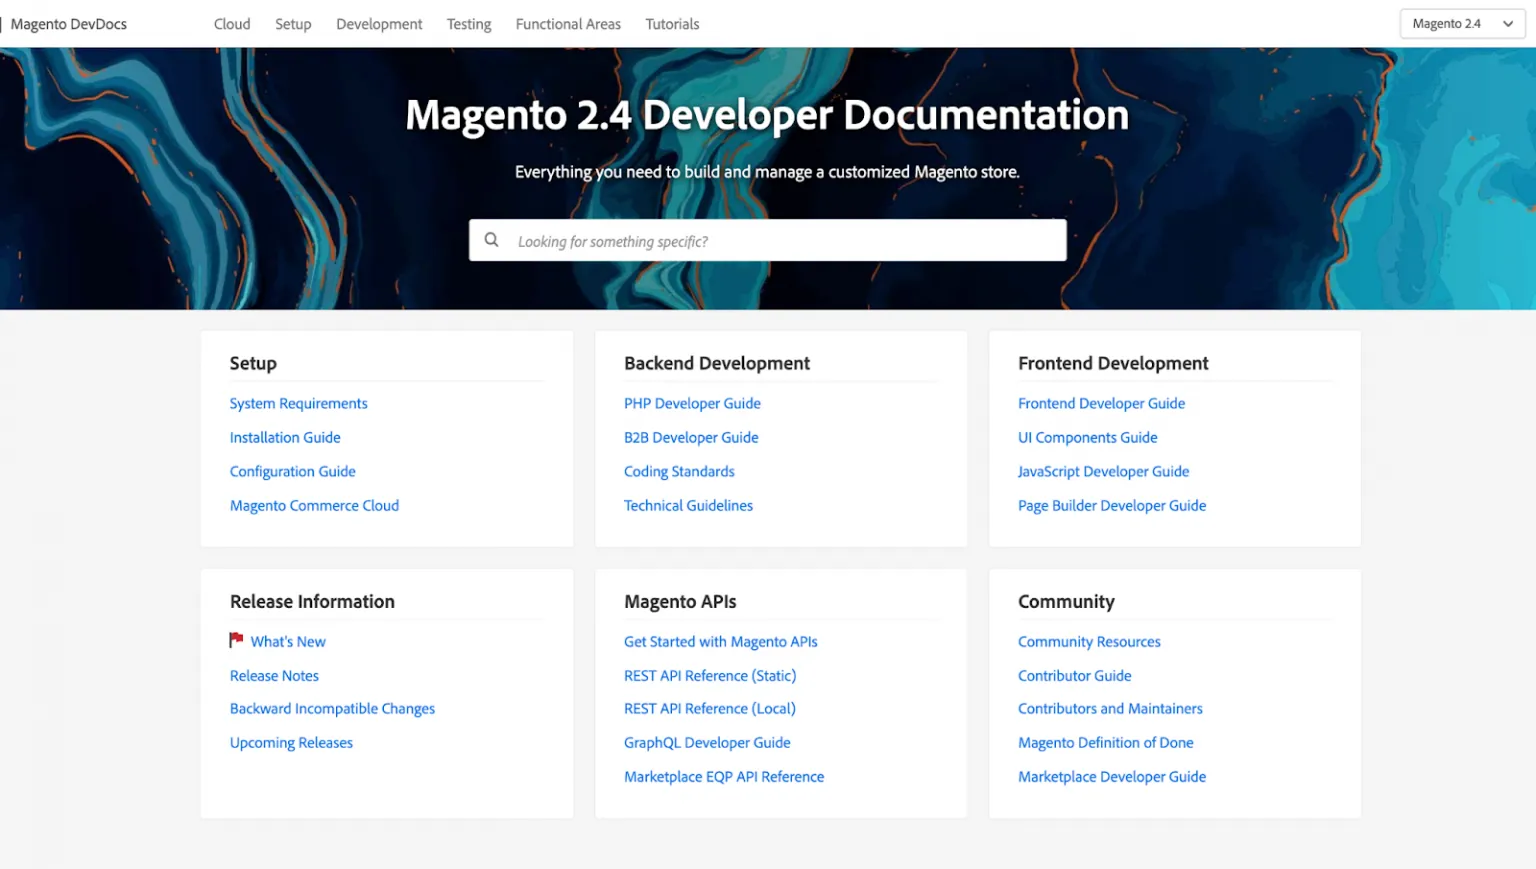 Magento's Developer Documentation